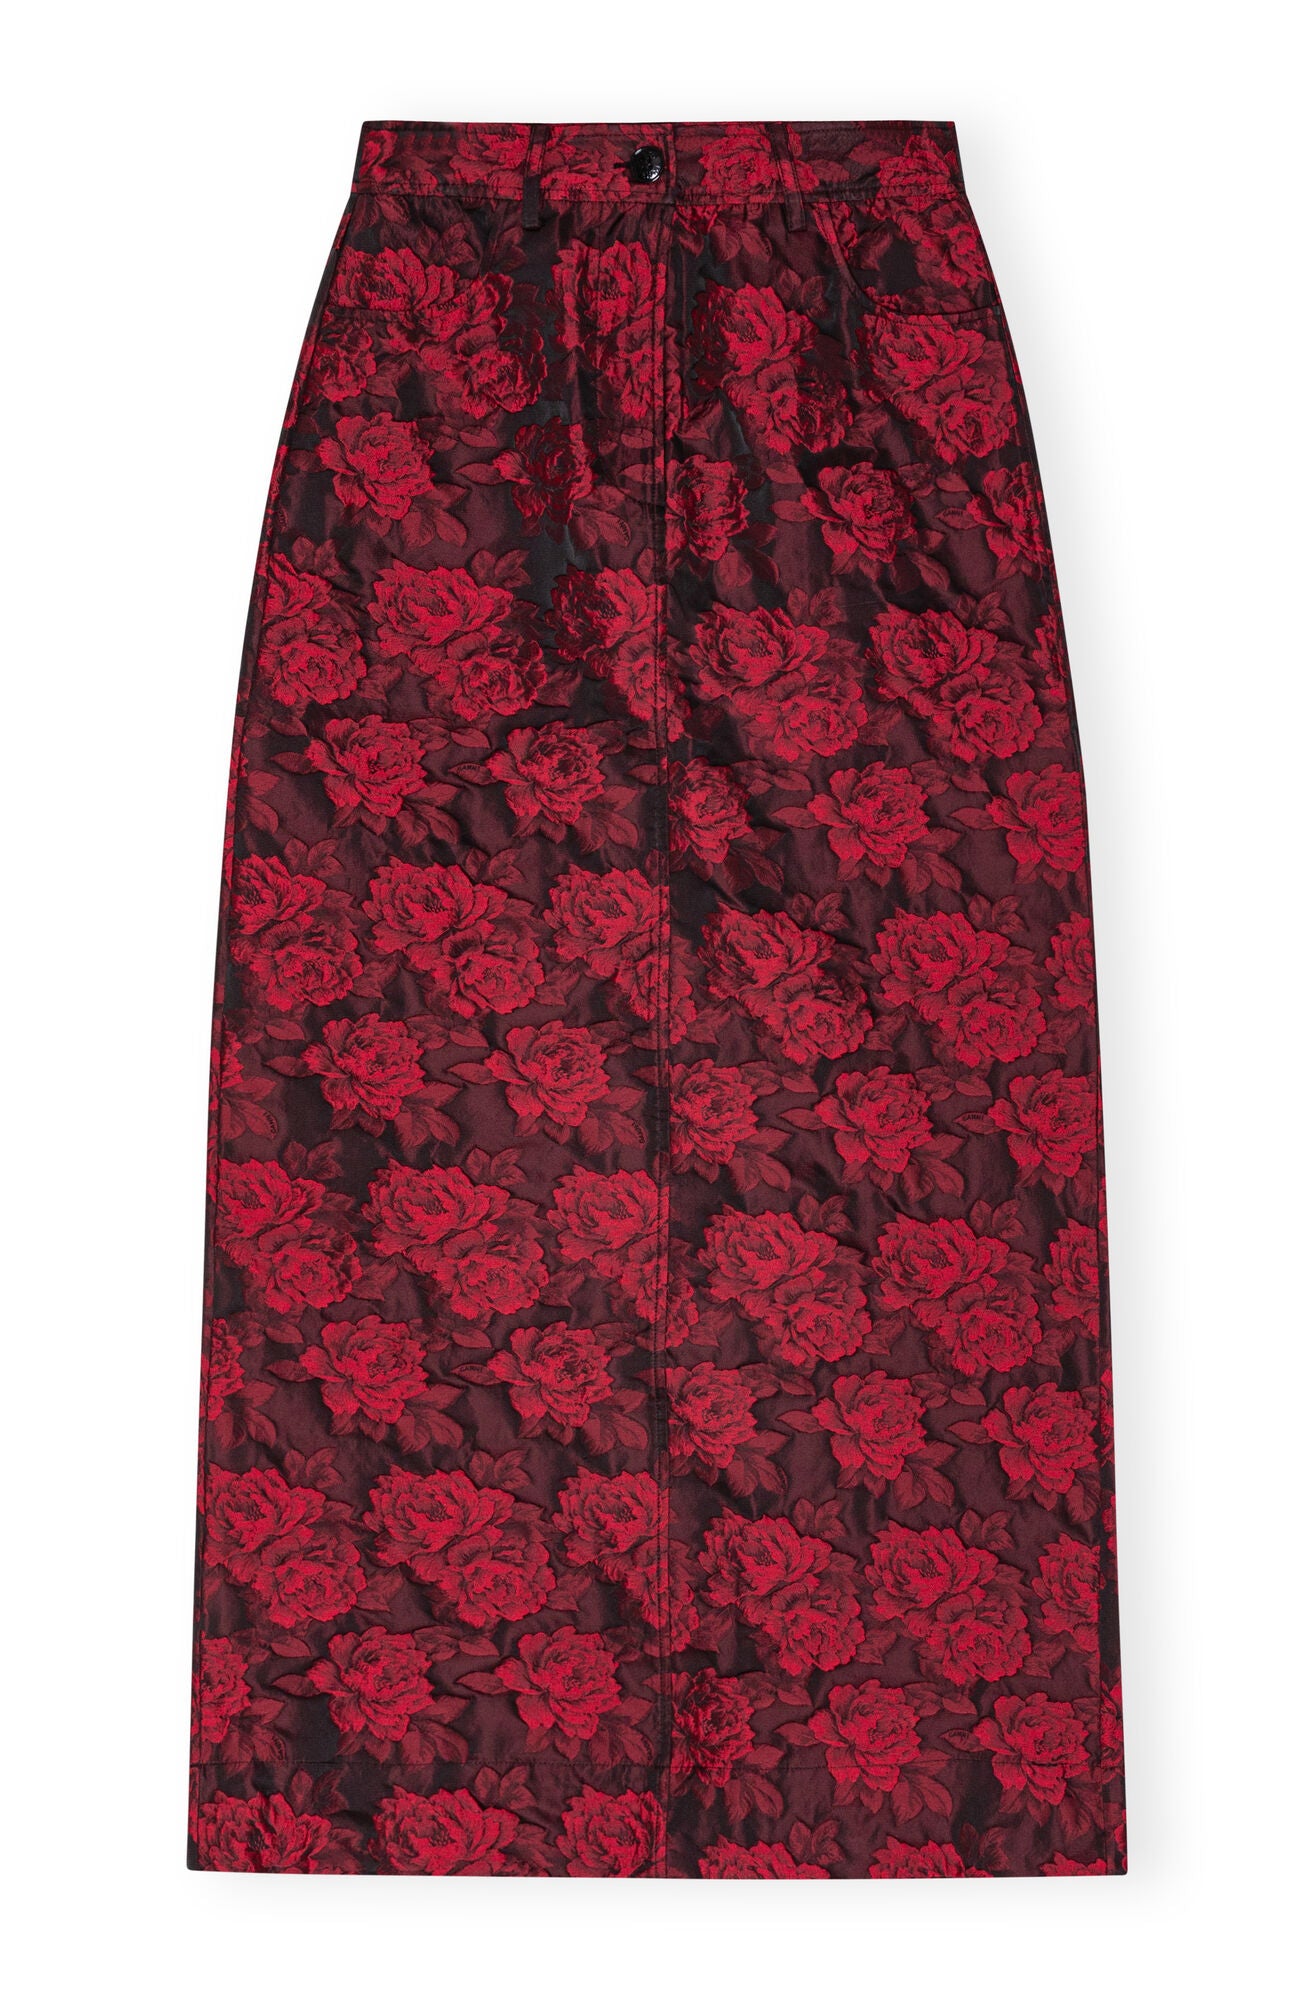 LEO BOUTIQUE Botanical Jacquard Long Skirt High Risk Red GANNI